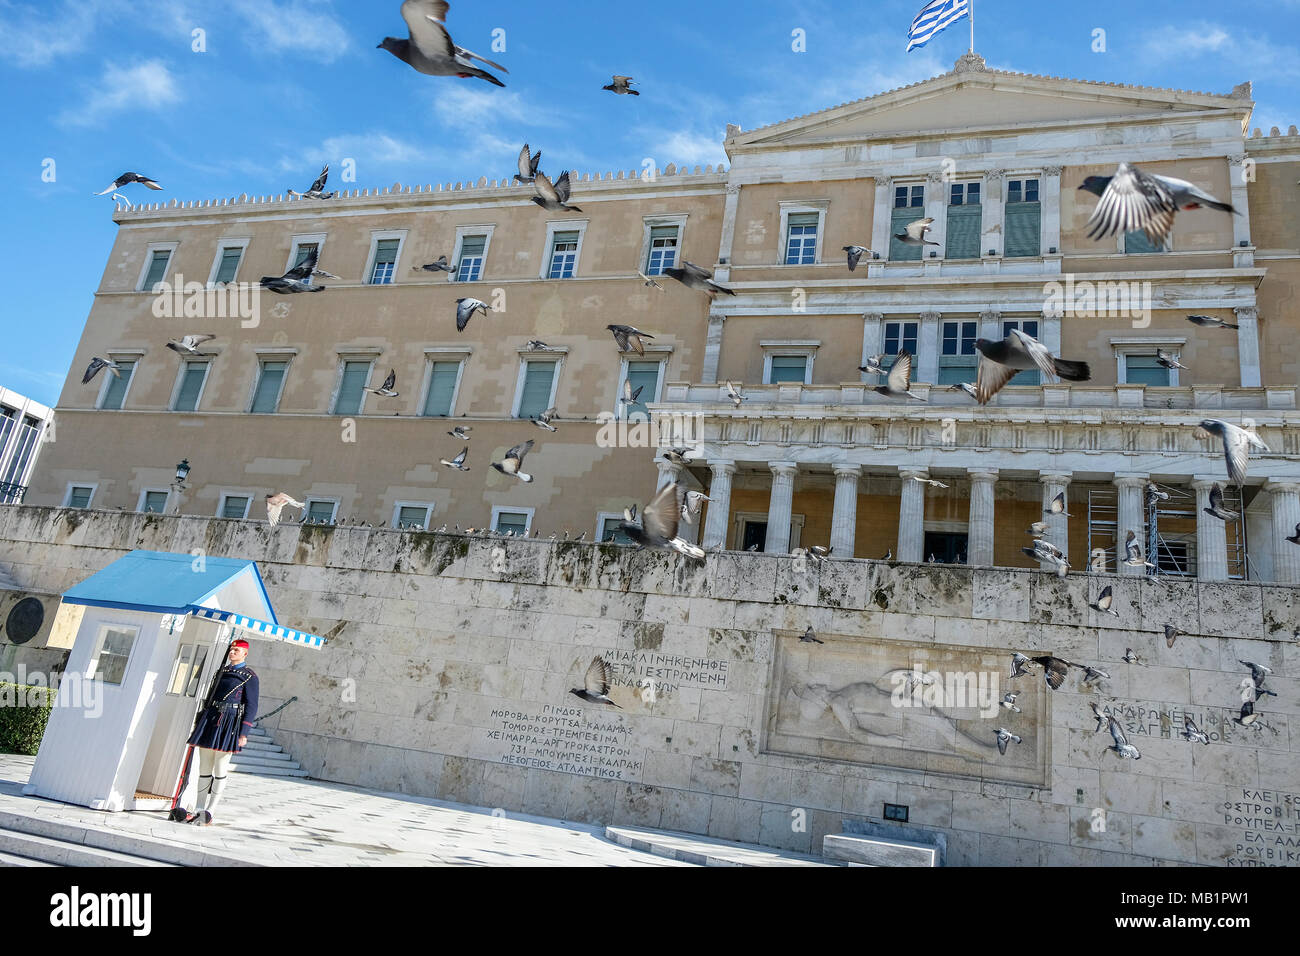 Athen, Griechenland - 29 Dezember, 2017: Die wachablösung am Grab des Unbekannten Soldaten auf dem Syntagma-platz im griechischen Parlament in Athen. Stockfoto